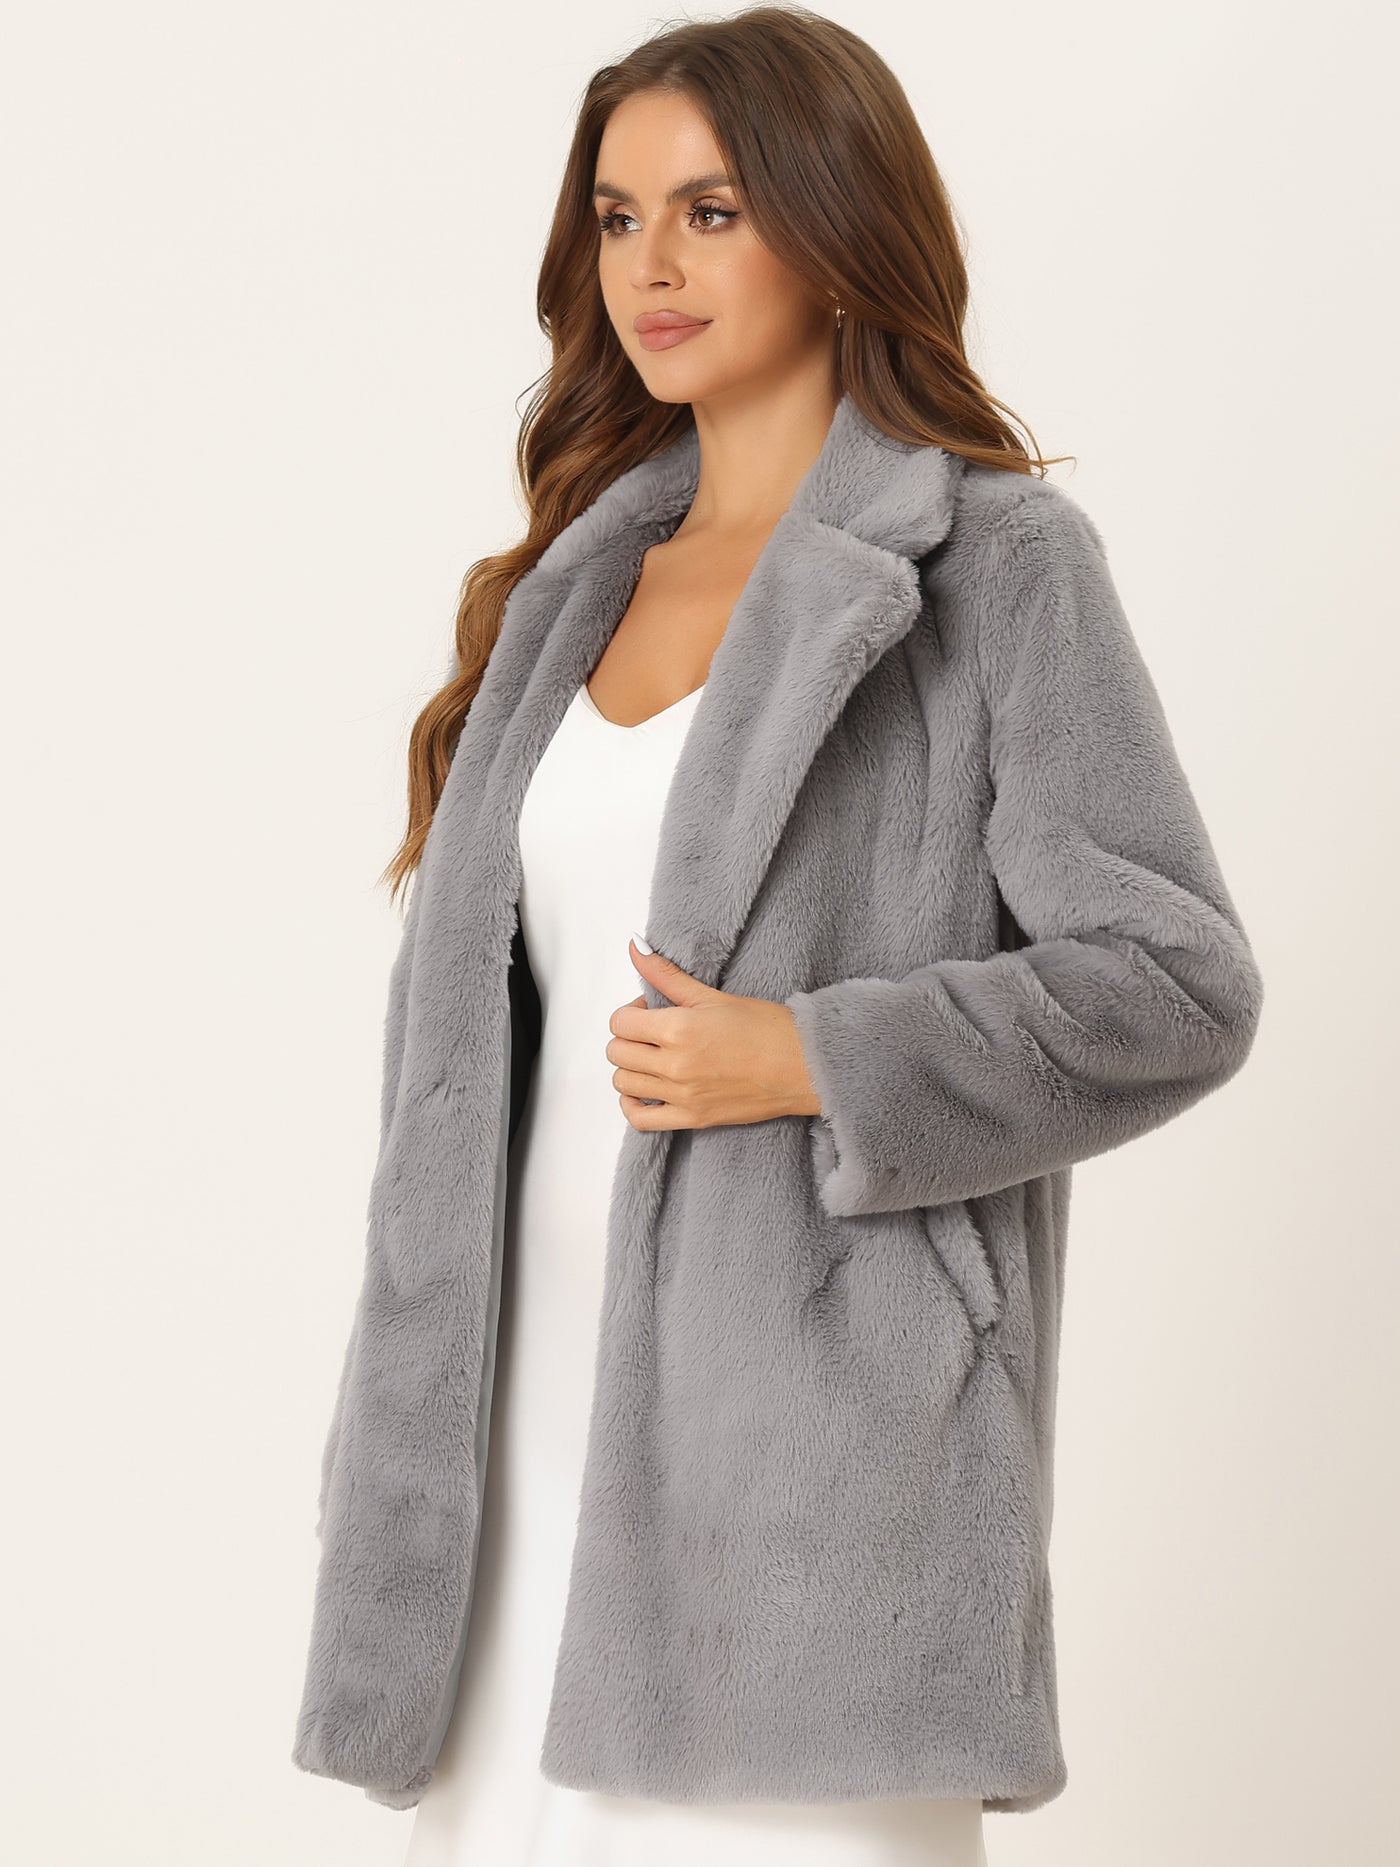 Allegra K Lapel Collar Faux Fur Fuzzy Winter Warm Pockets Coat Jacket